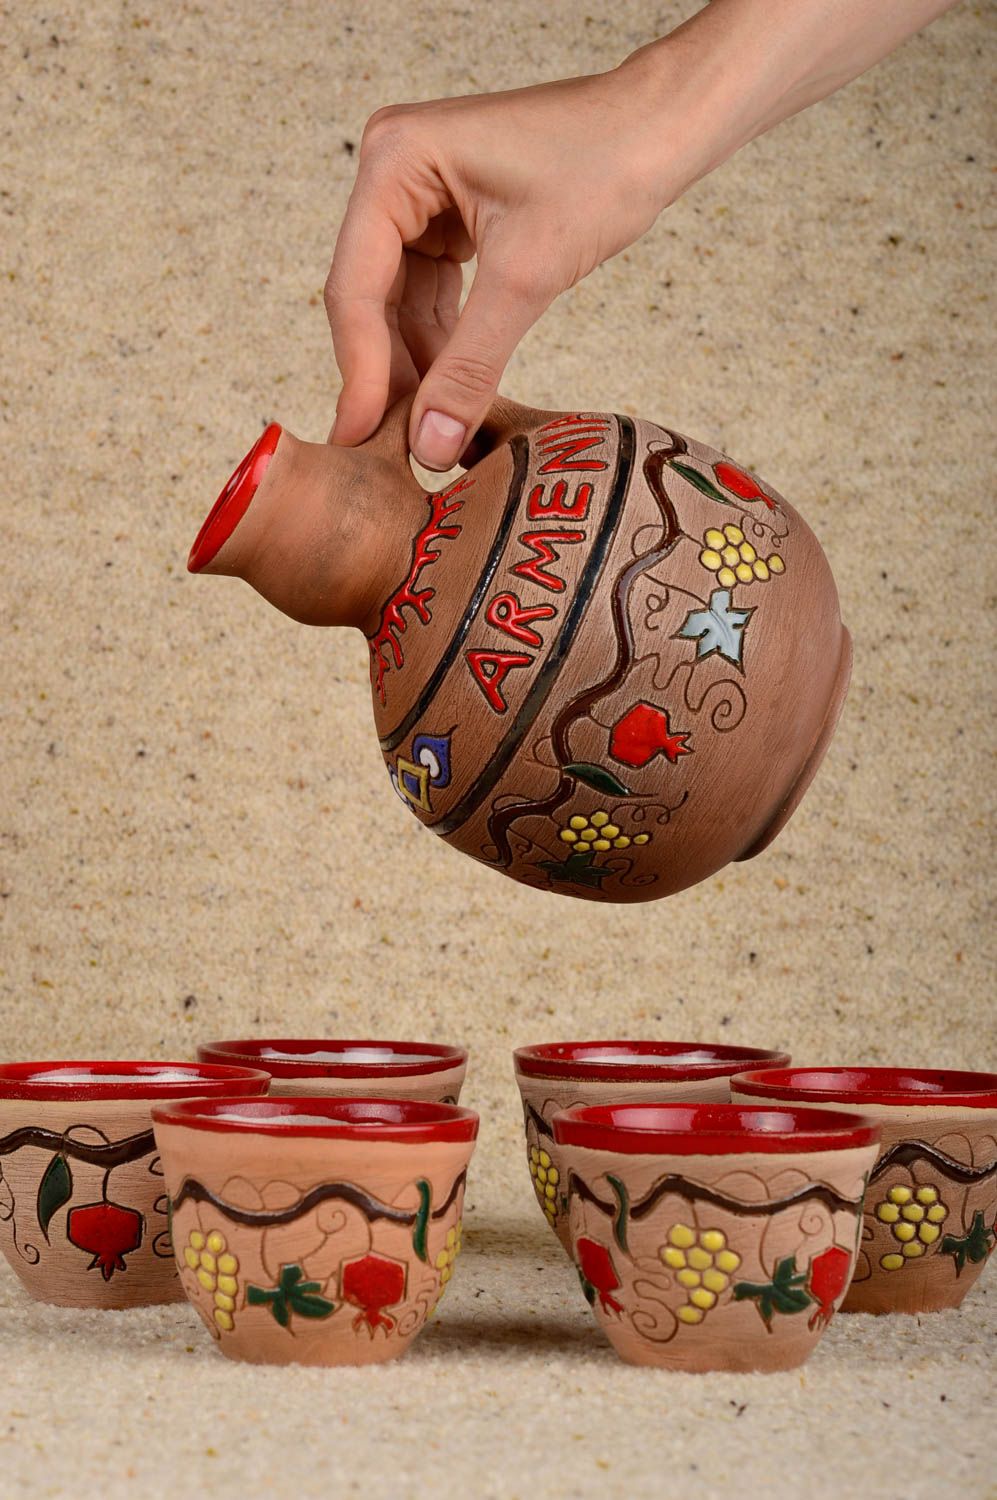 Cruche à l'eau fait main Verre céramique Vaisselle ethnique 6 pcs argile photo 4